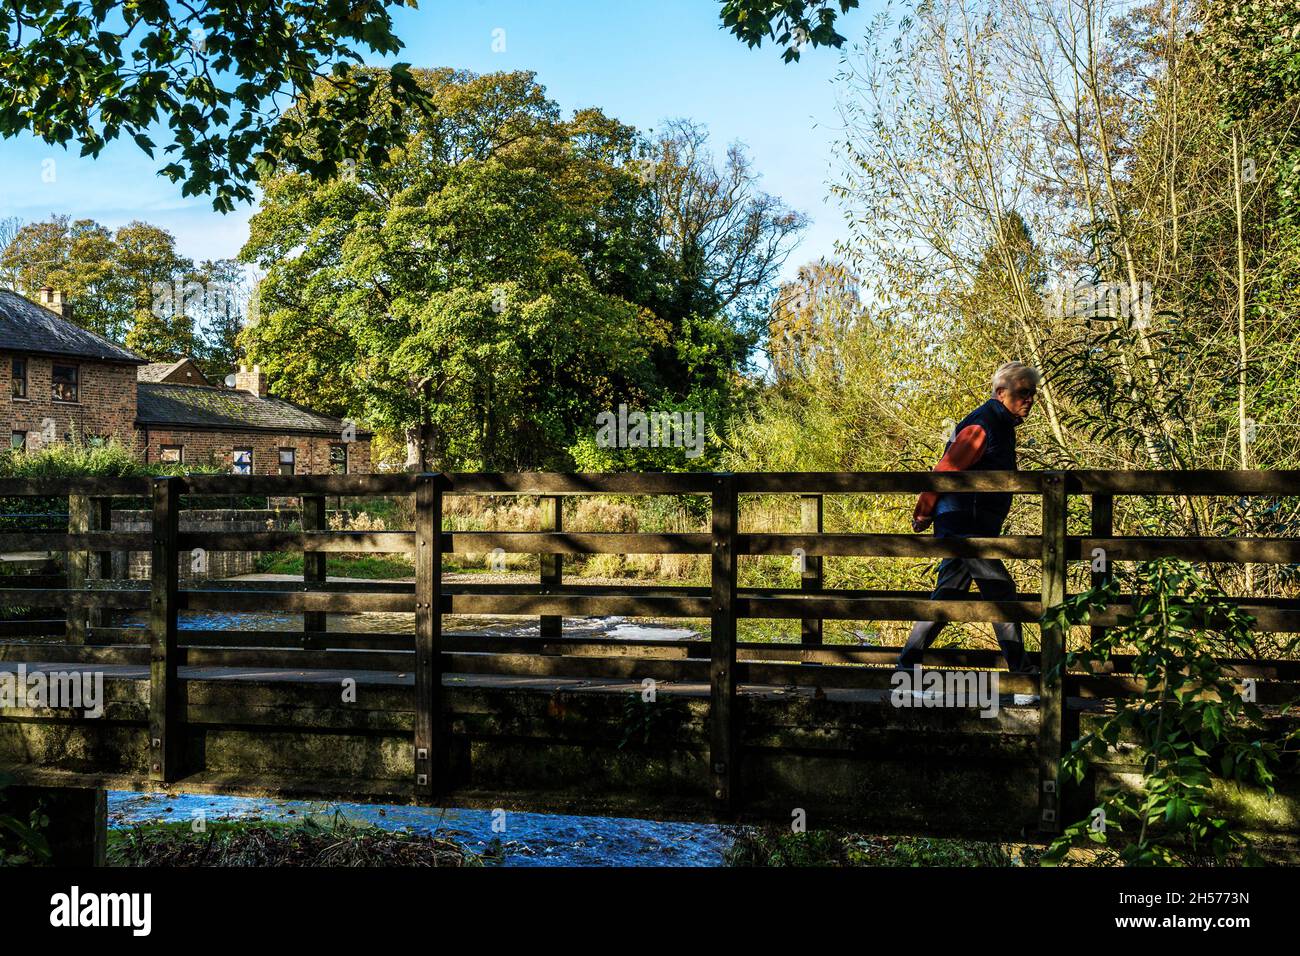 Puente peatonal de madera a través del río Skell con un hombre caminando a través de él con árboles de colores en el fondo en un día de otoño, Ripon, Inglaterra. Foto de stock